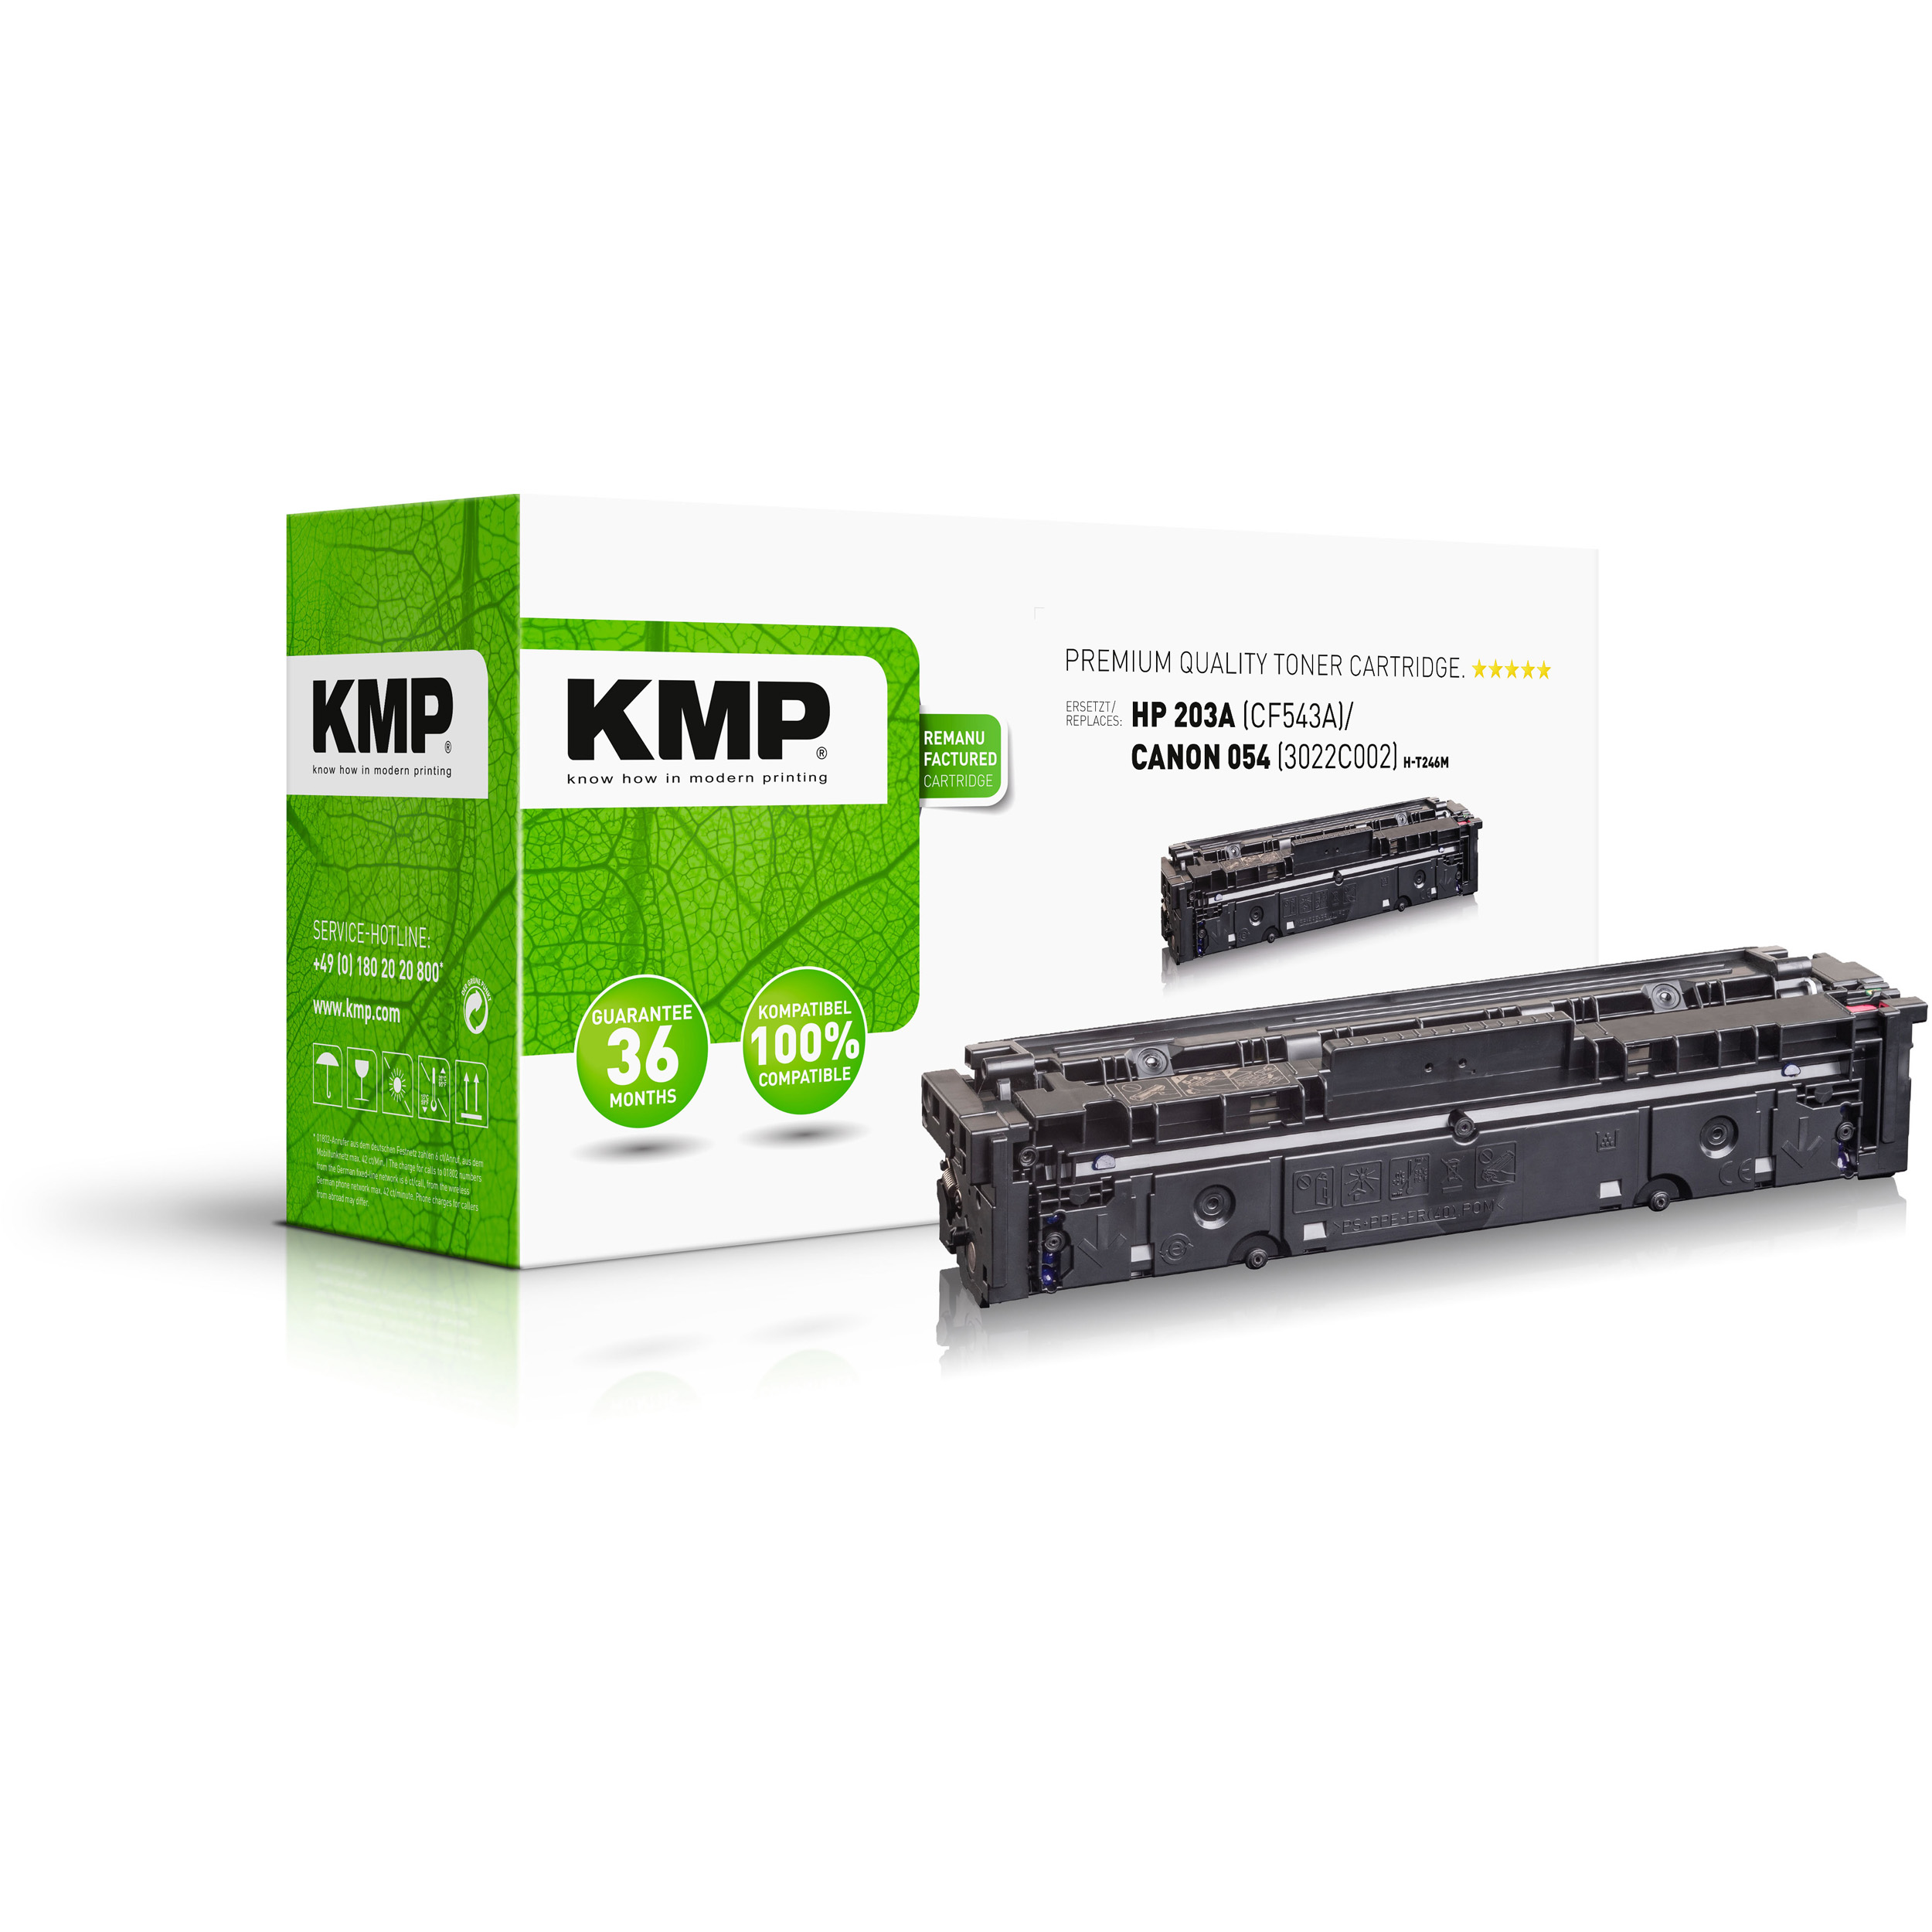 KMP HP (3022C002) magenta Toner für (CF543A) Toner 203A Magenta